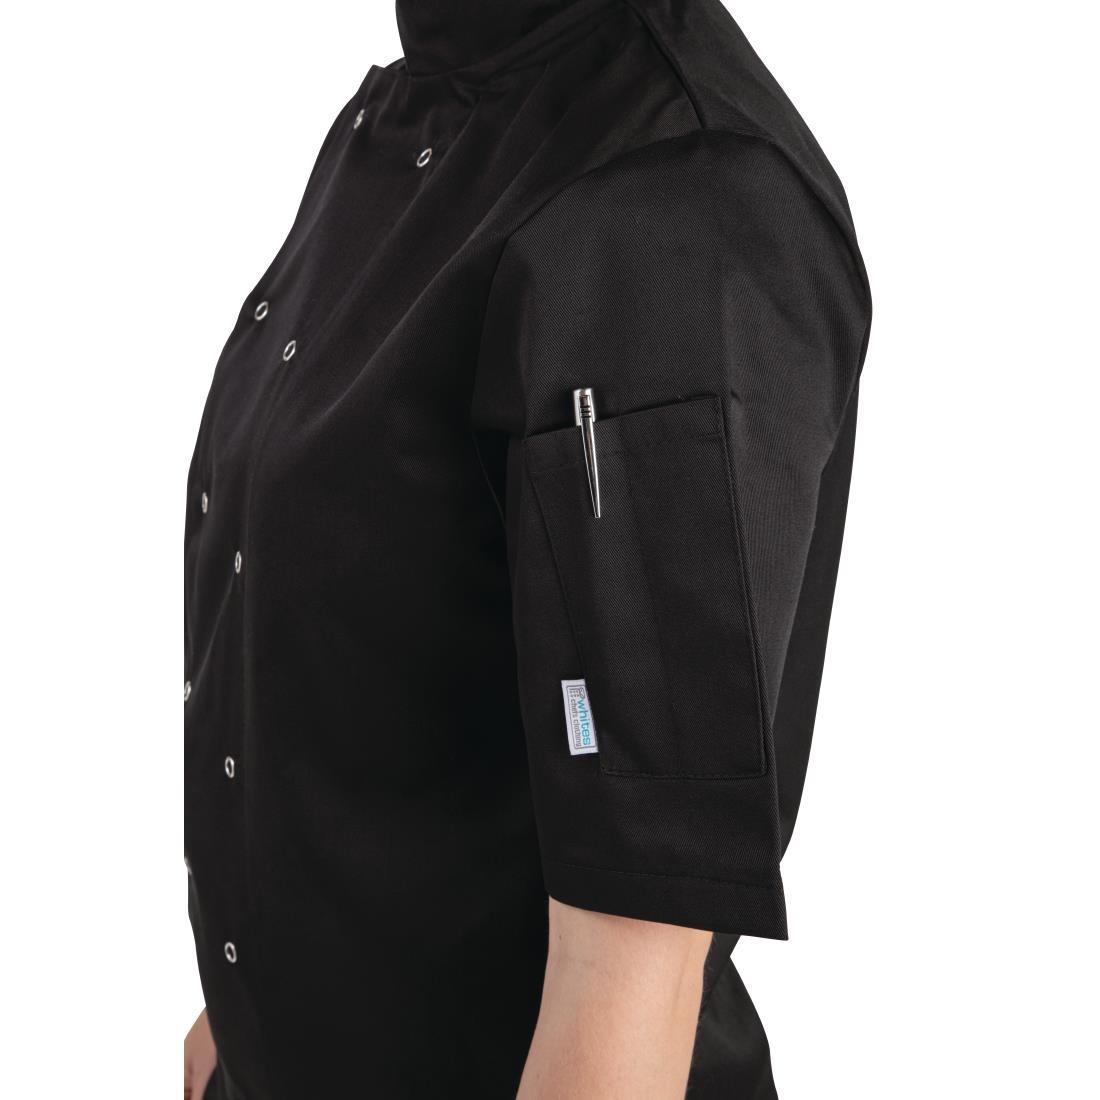 Whites Vegas Unisex Chefs Jacket Short Sleeve Black 5XL - A439-5XL  - 4